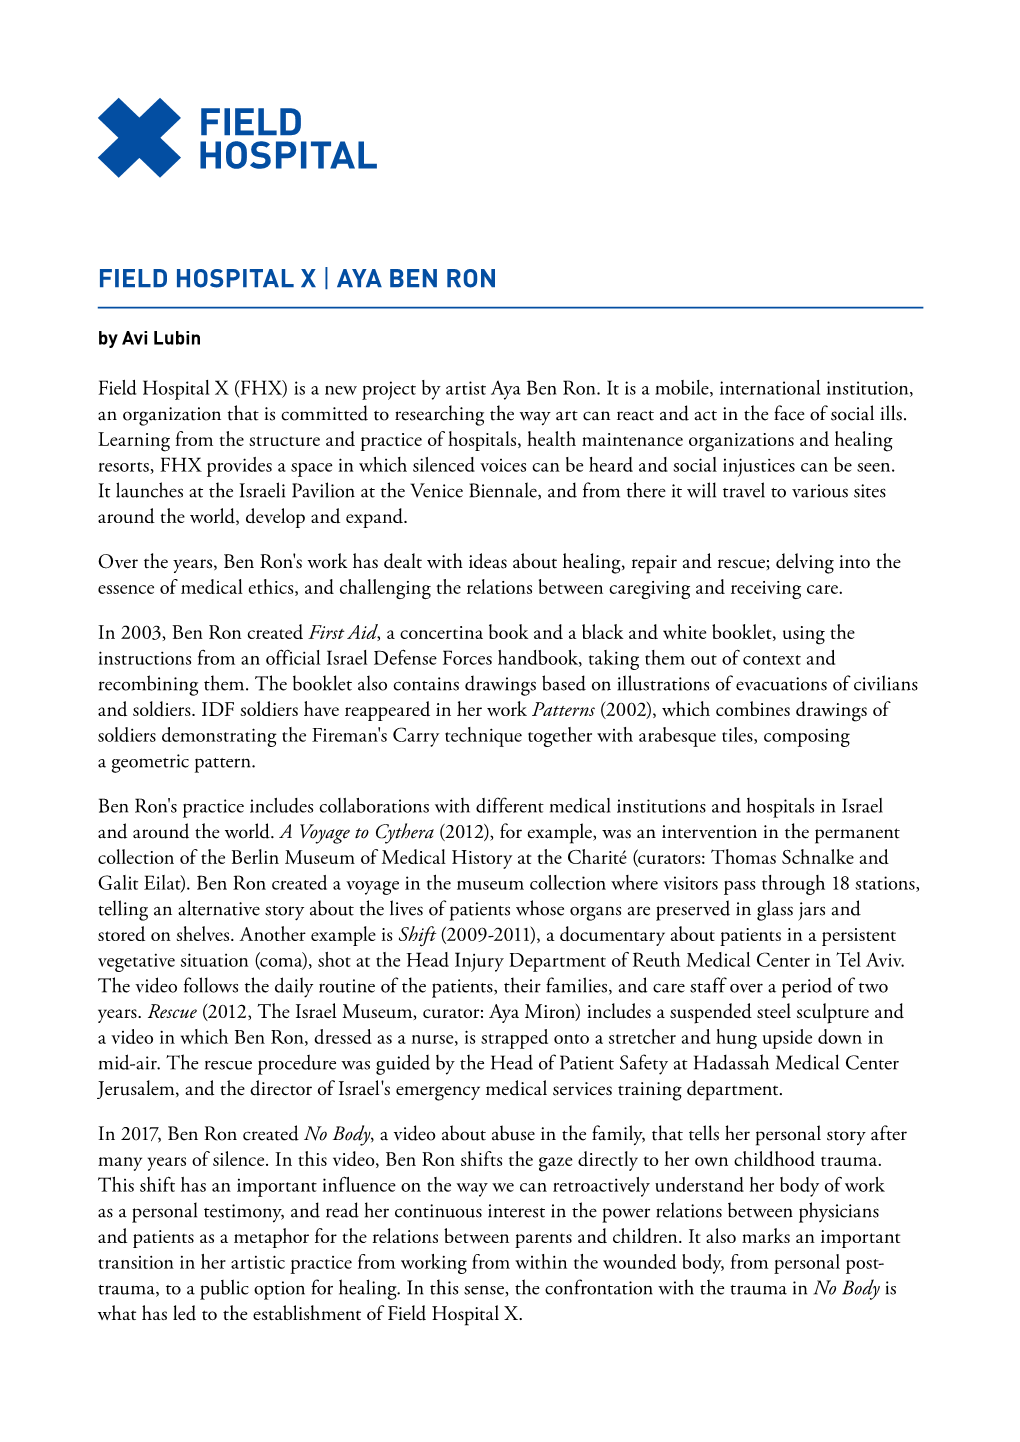 FIELD HOSPITAL X | Text by Avi Lubin